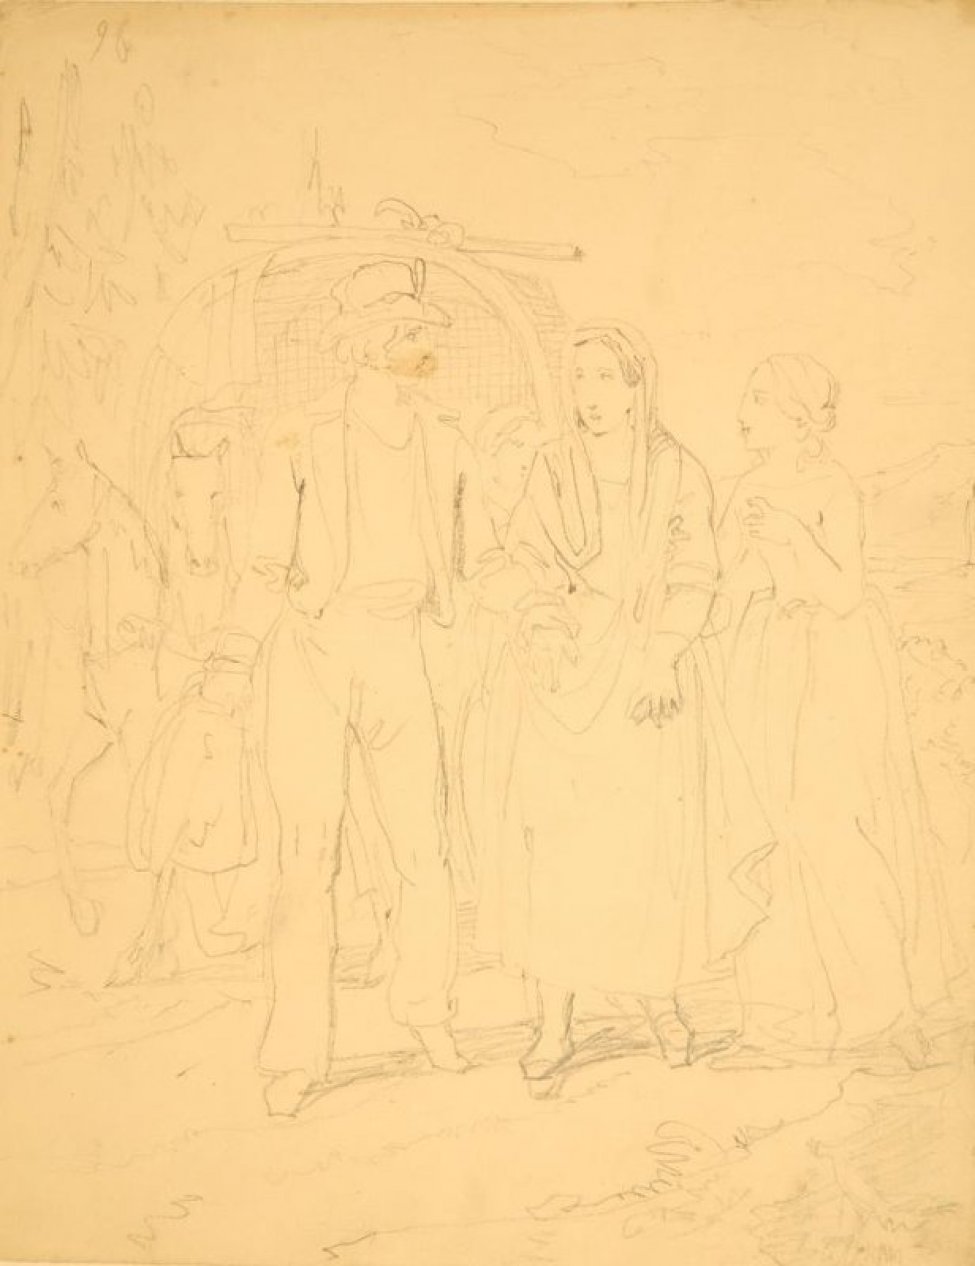 Изображена дорожная жанровая сценка. В центре композиции изображена группа идущих, состоящая из фигур двух женщин и молодого человека. Все в костюмах середины 19 века. За ними виден экипаж с двумя впряженными лошадьми.